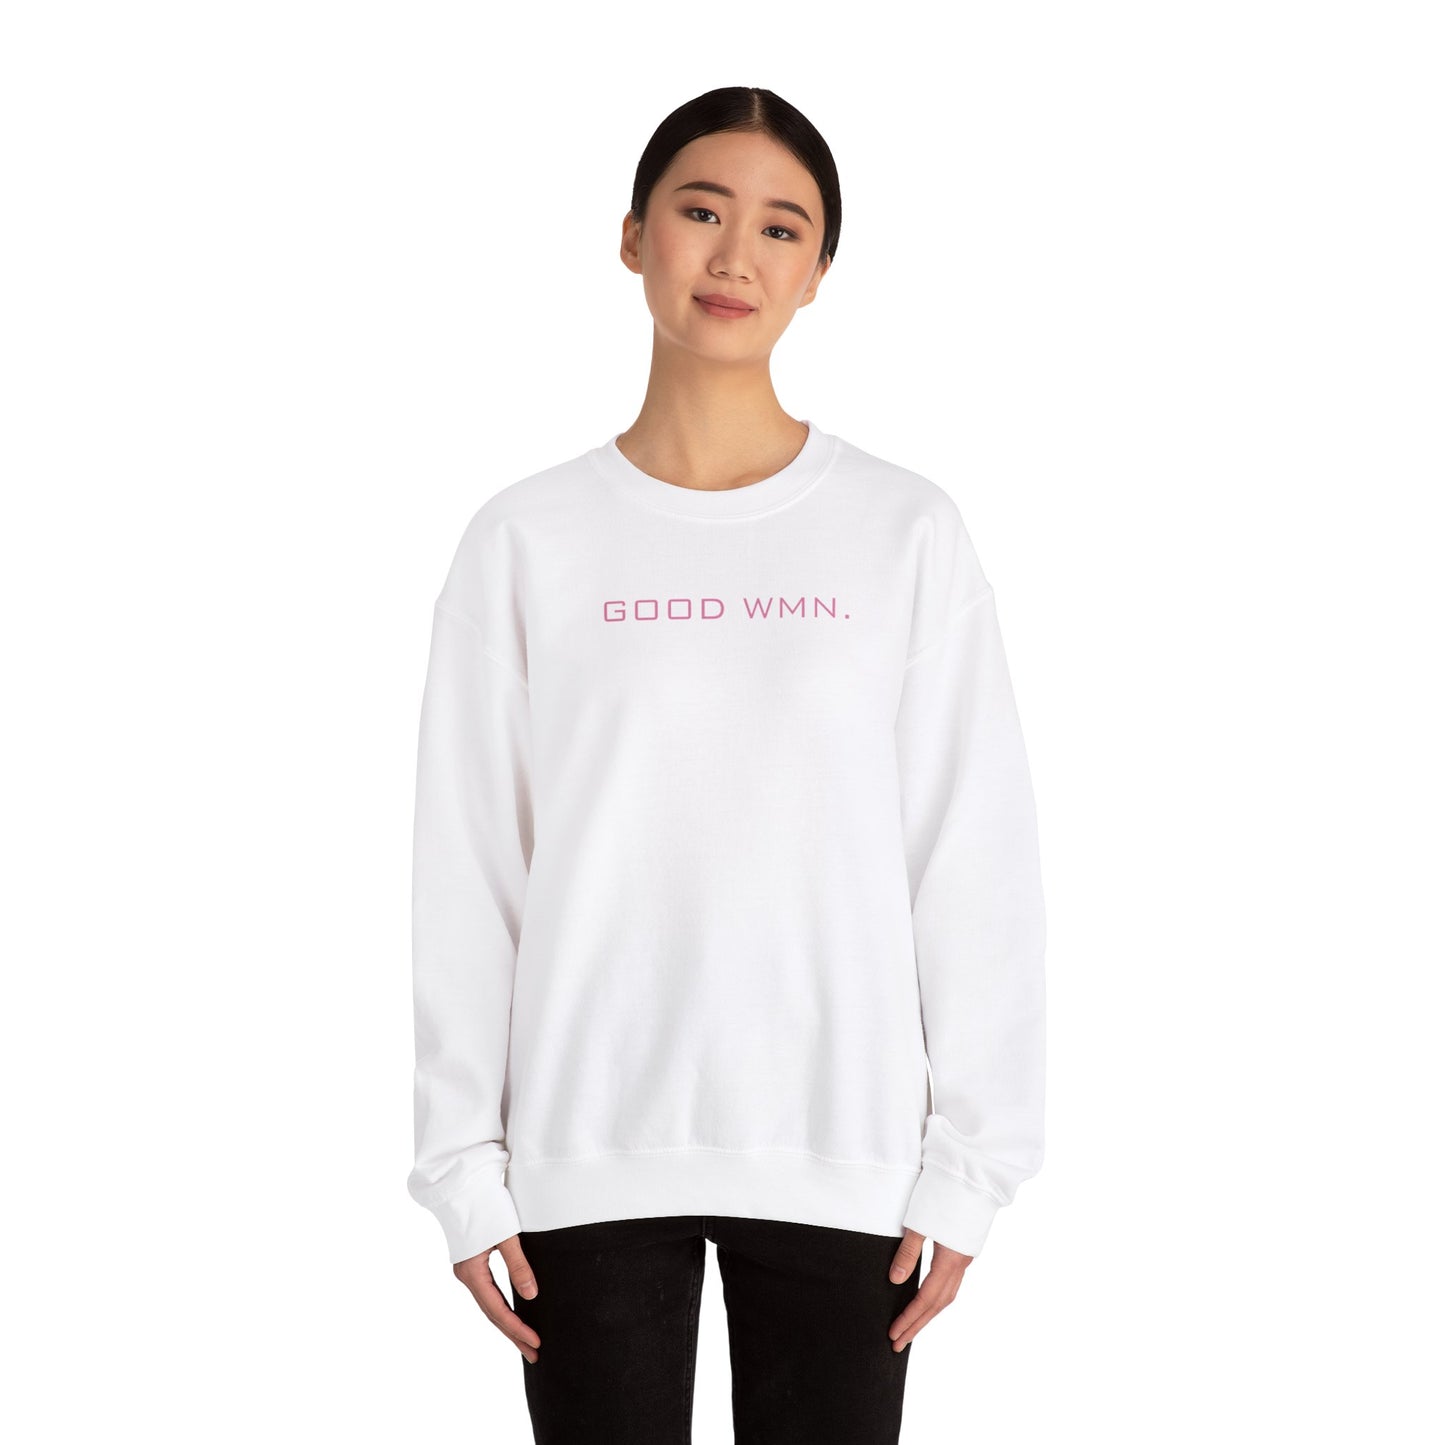 model wearing GOOD WMN Sweatshirt | GOOD Woman Heavy Blend in white